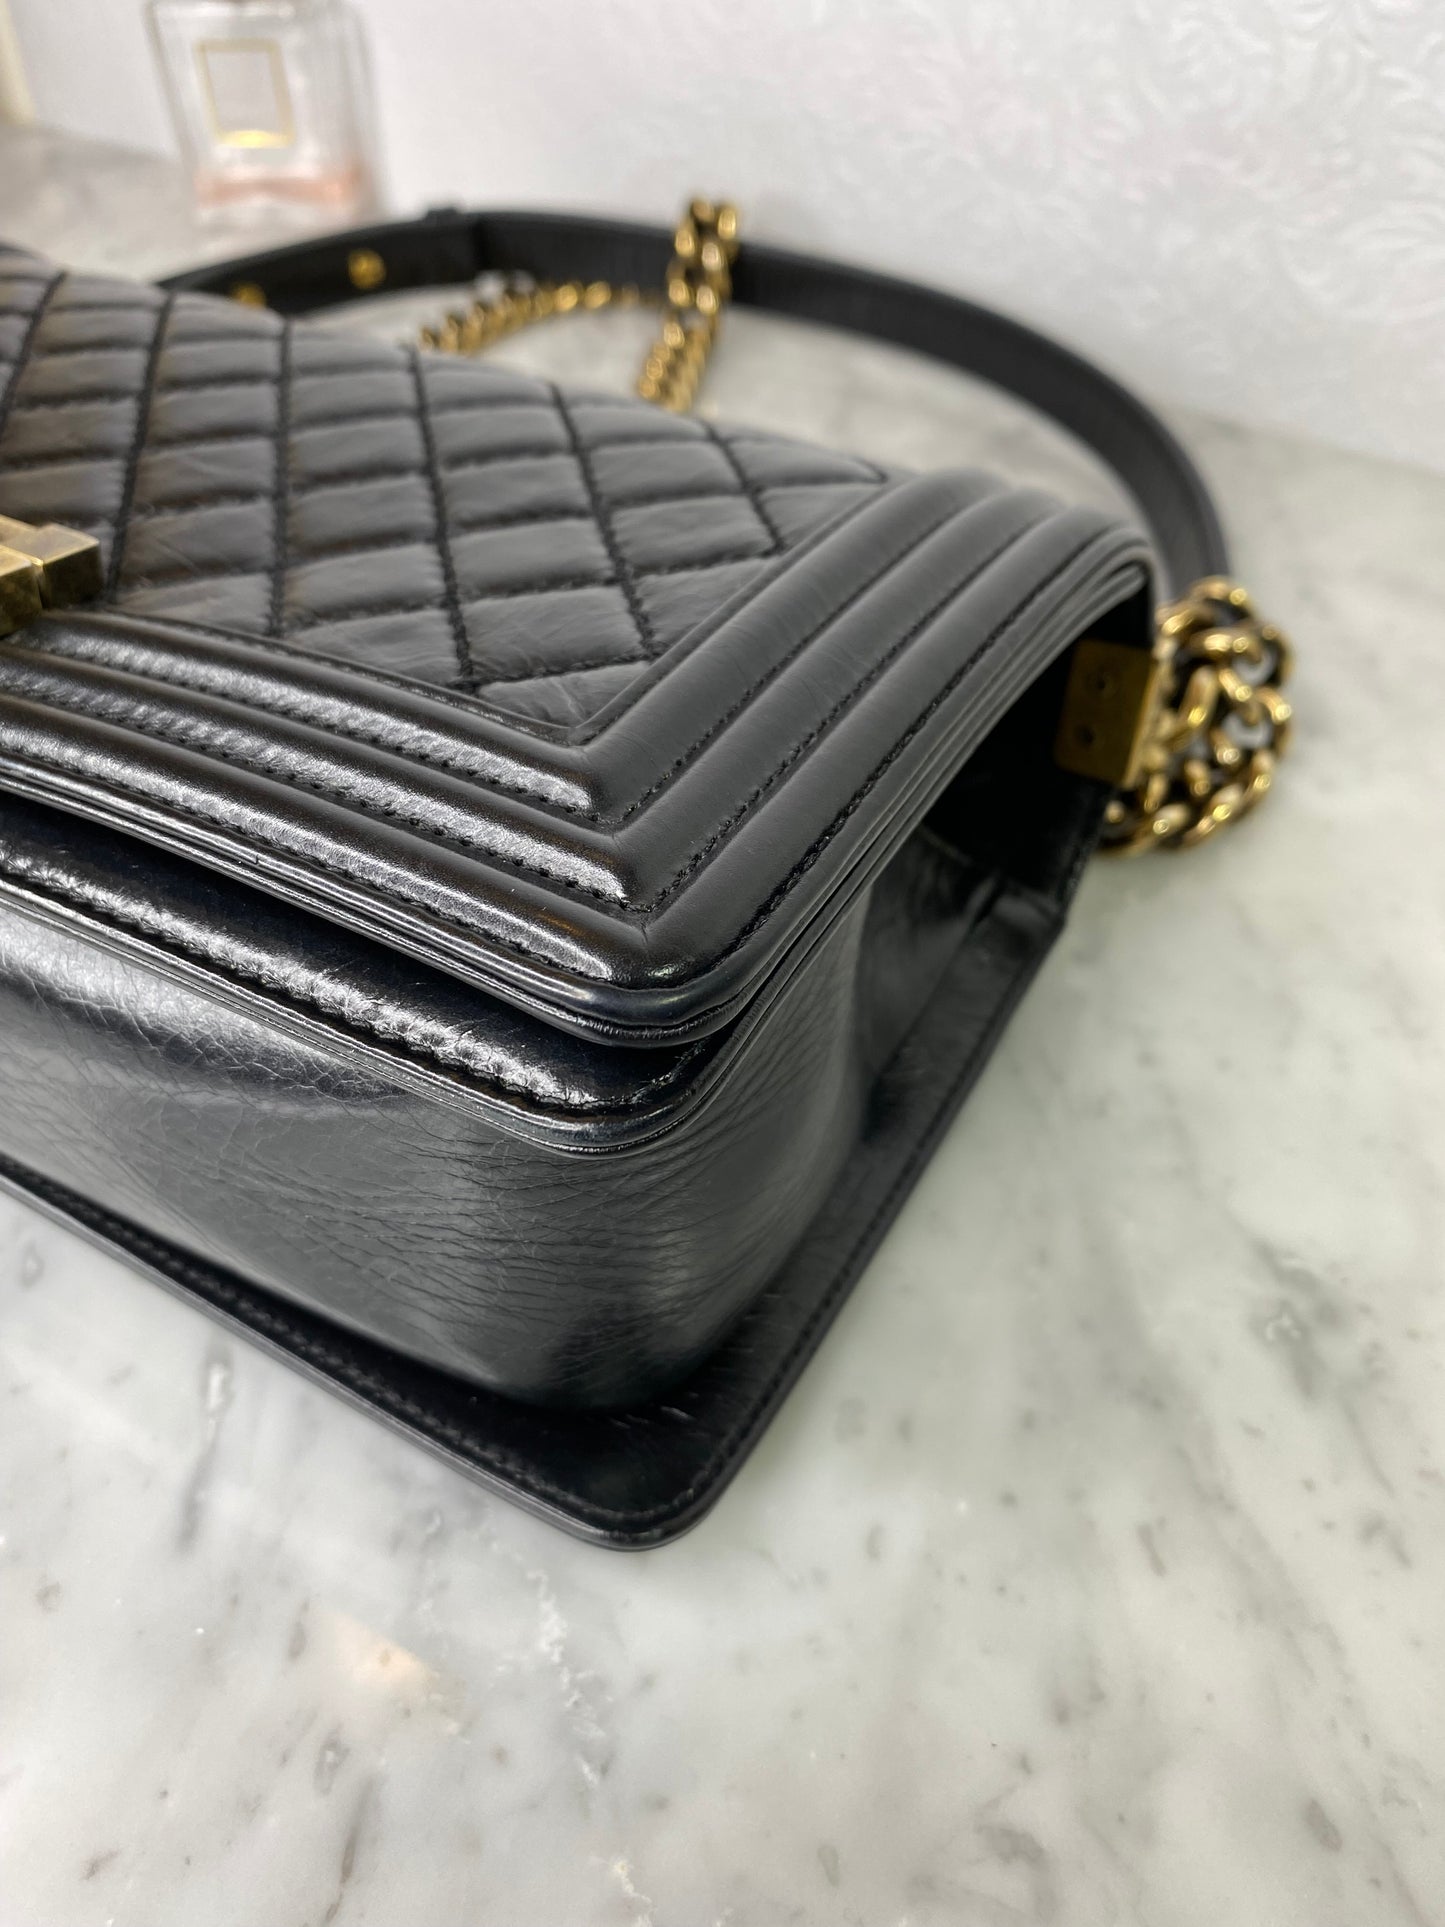 Chanel Boy Bag Calfskin Black GHW - Medium